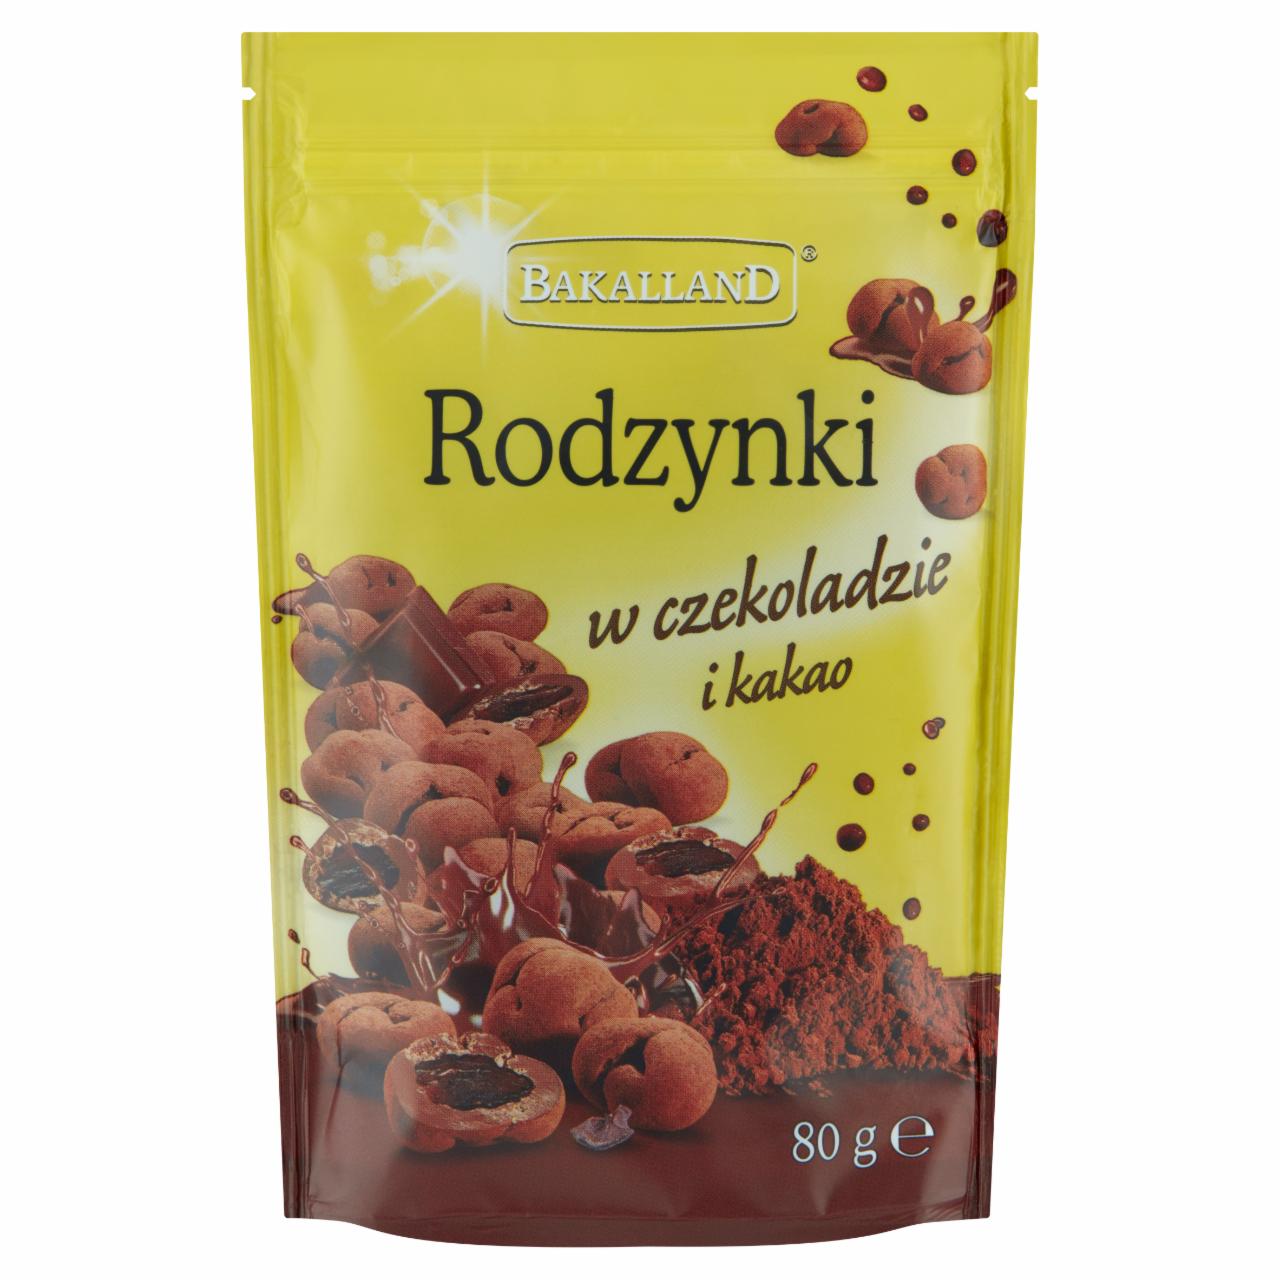 Zdjęcia - Bakalland Rodzynki w czekoladzie i kakao 80 g